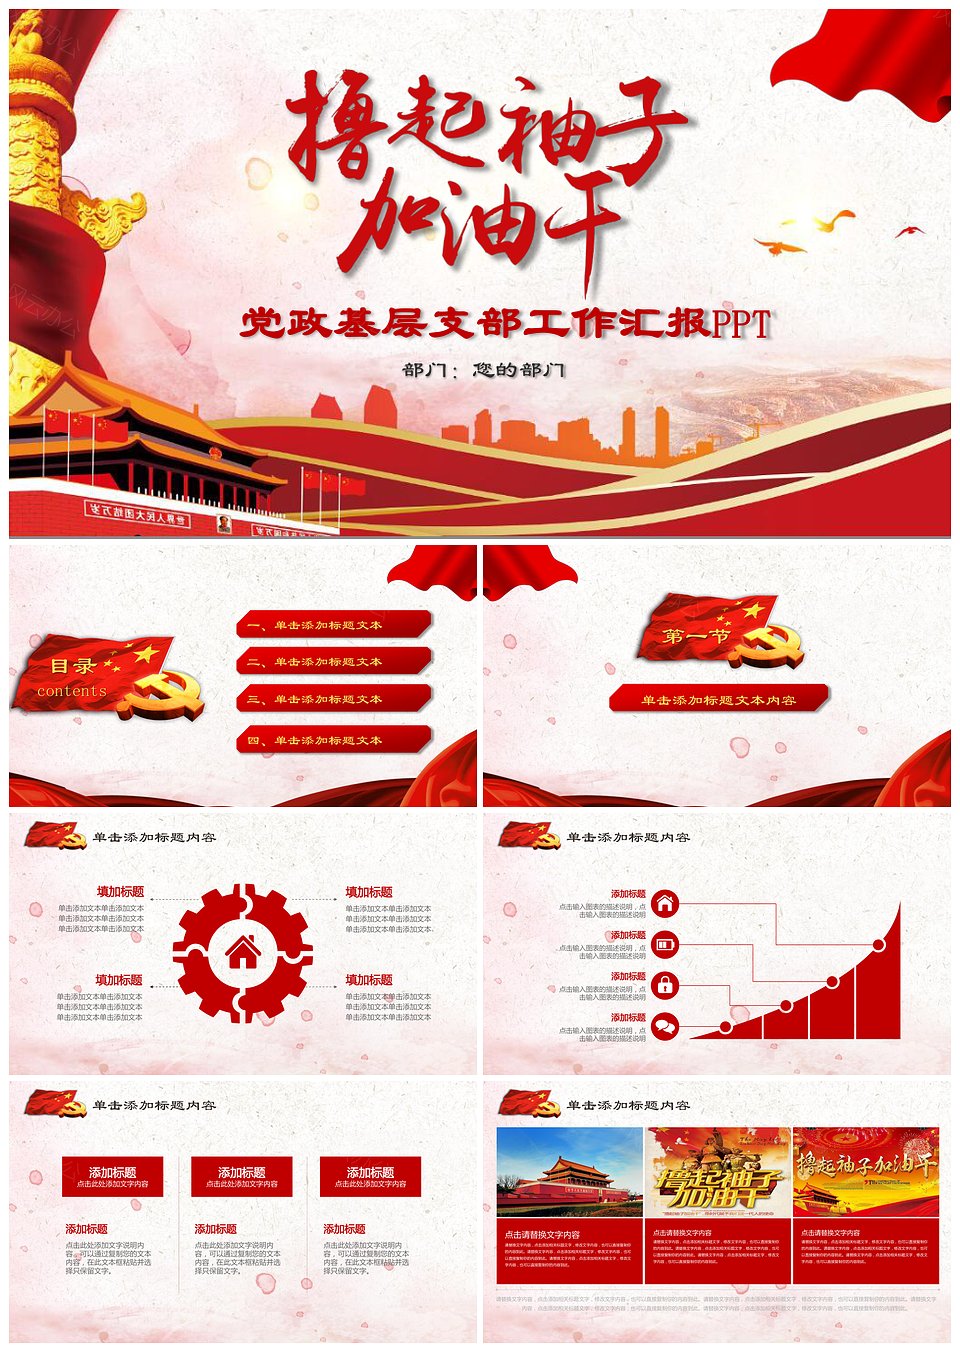 红色中国风撸起袖子加油干励志主题PPT模板